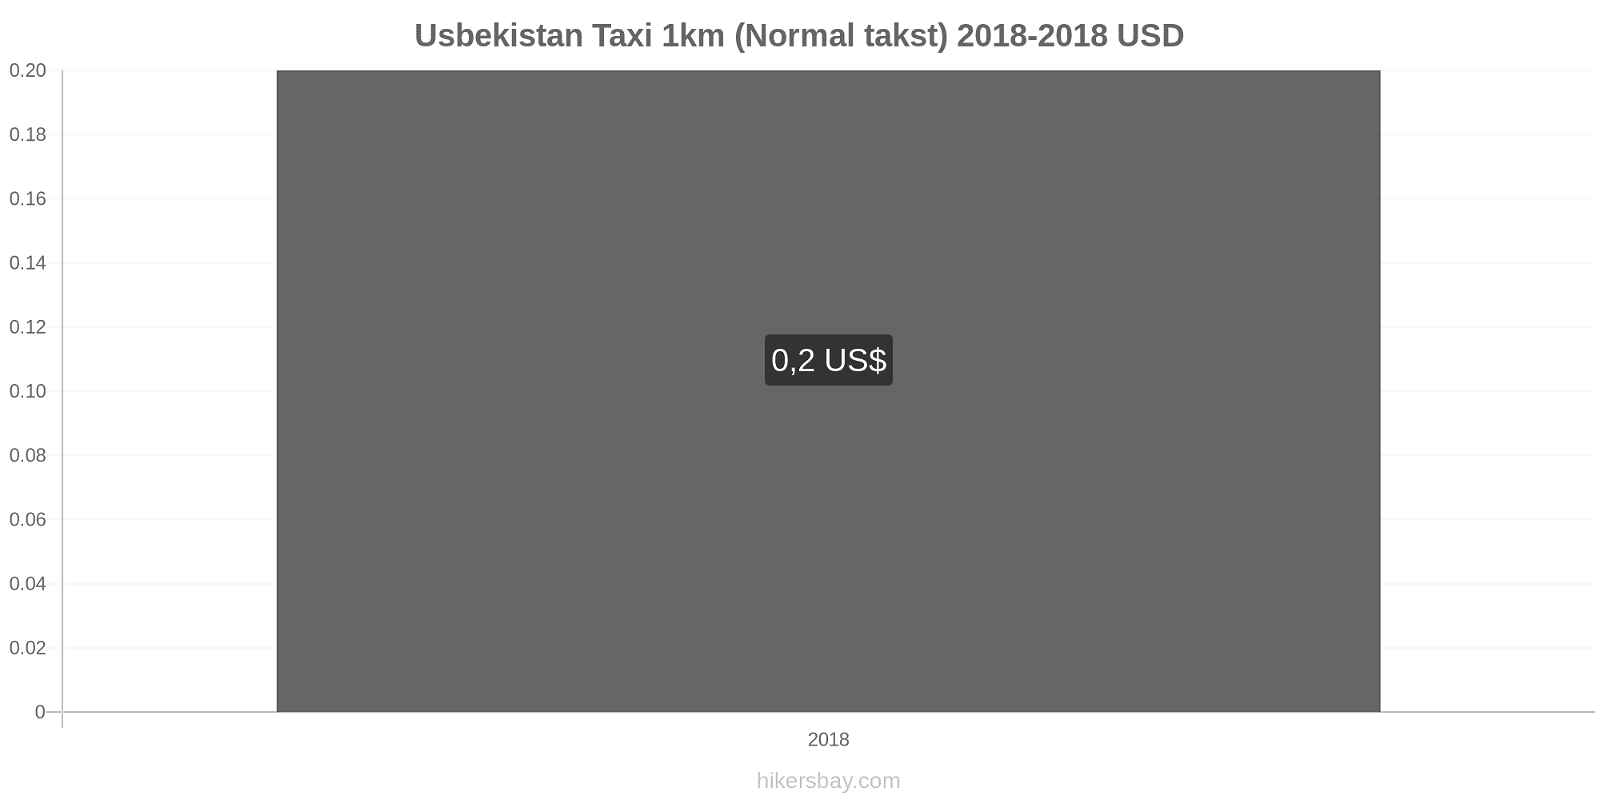 Usbekistan prisændringer Taxi 1km (normal takst) hikersbay.com